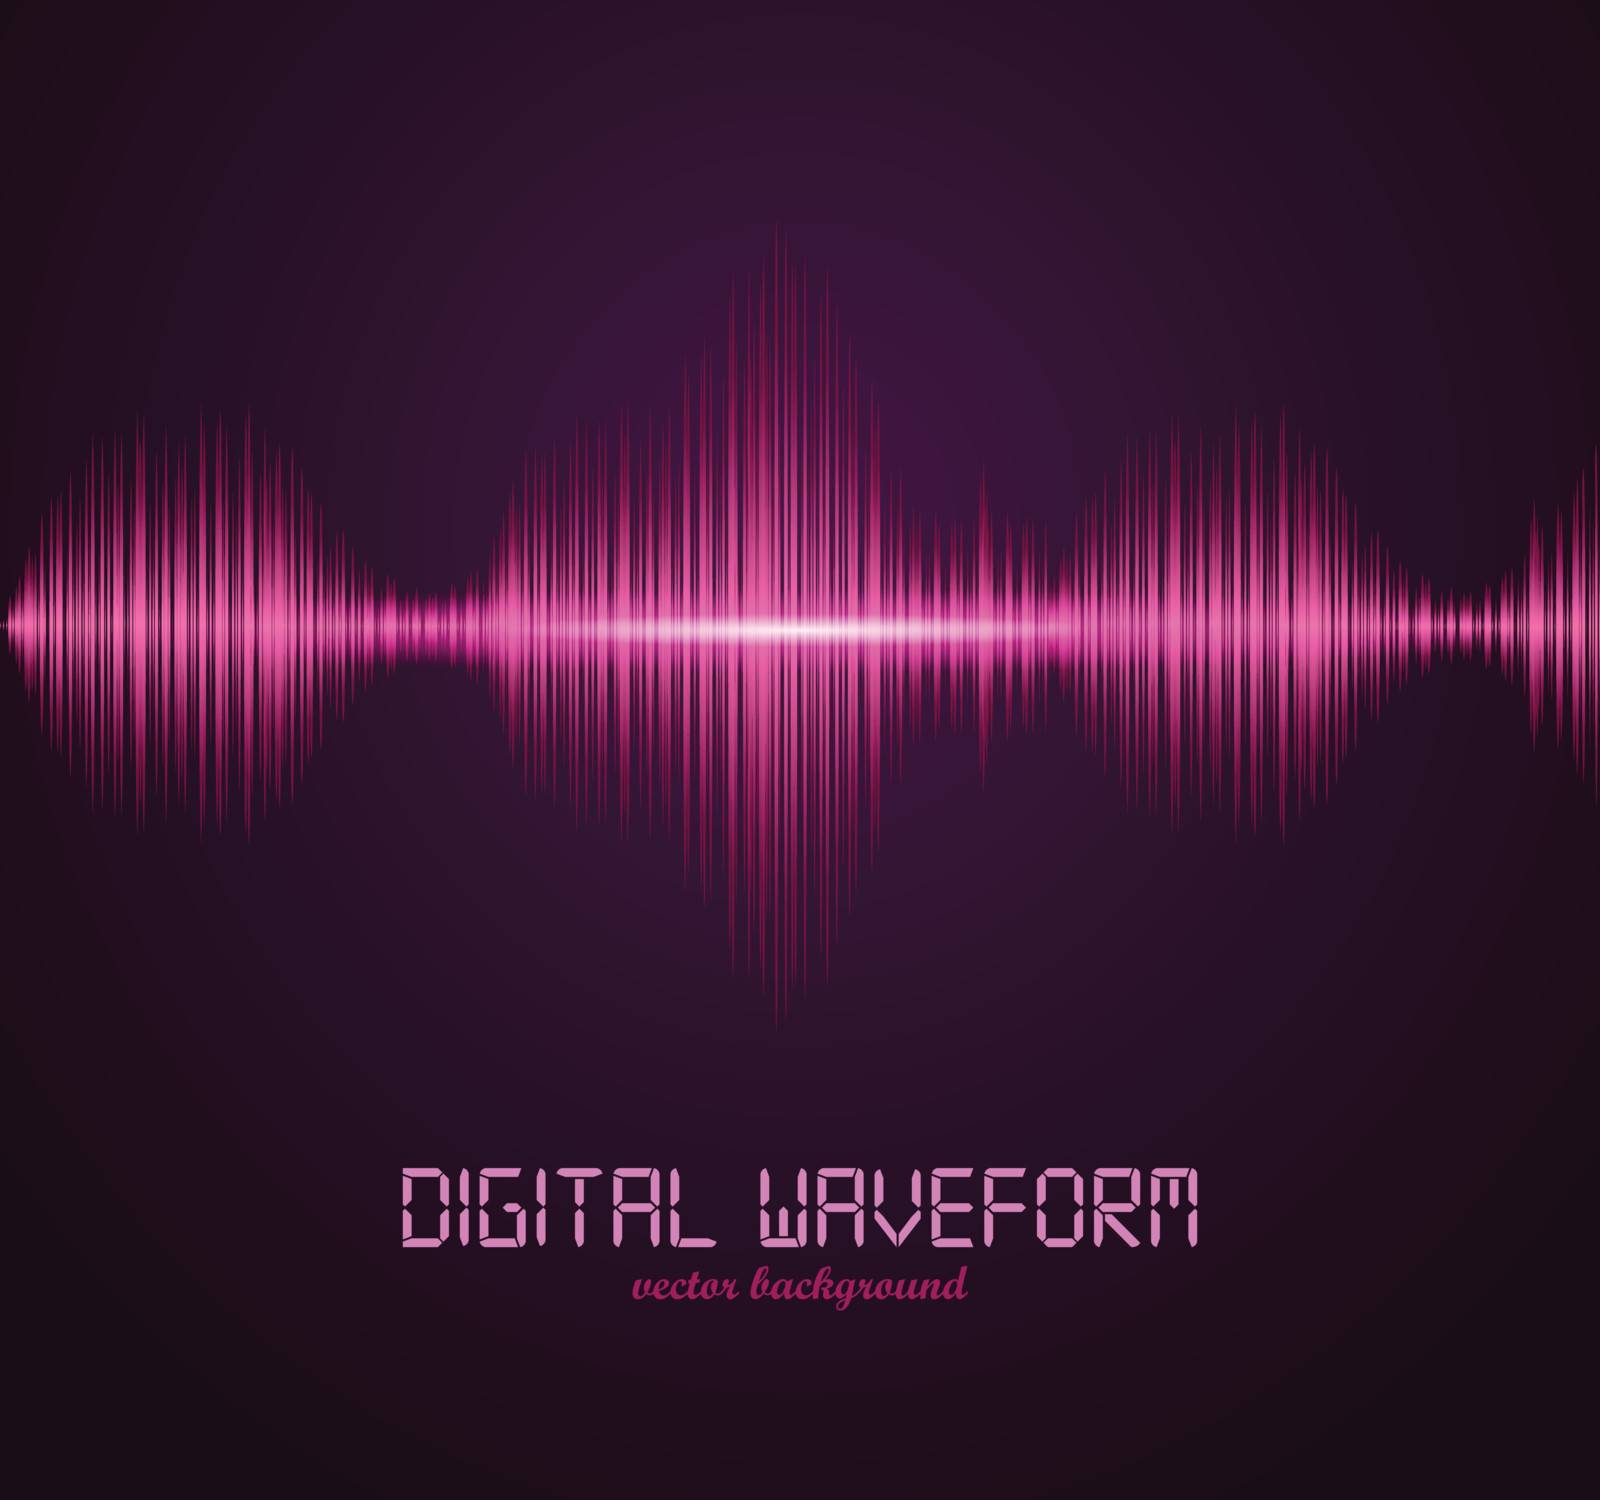 Digital waveform by skillup